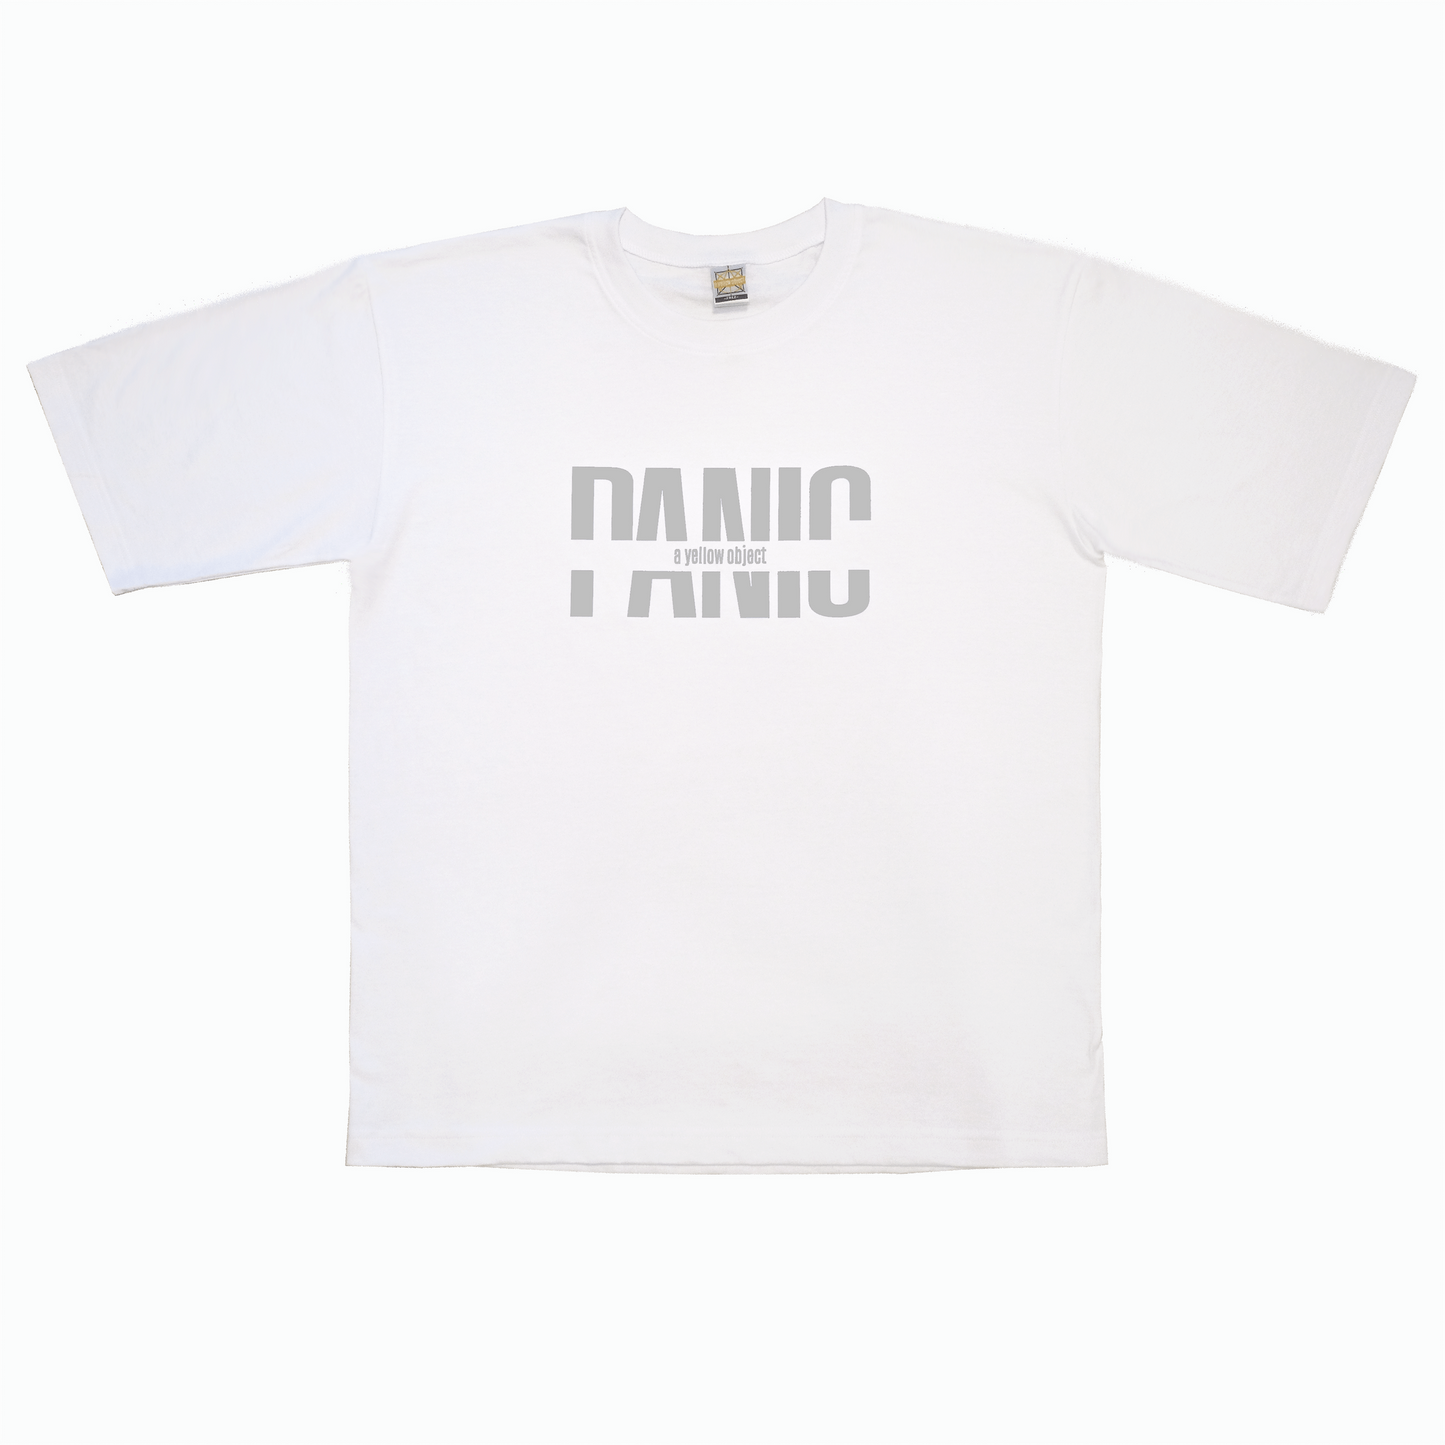 Panic Reflective T-Shirt (White) - a yellow object